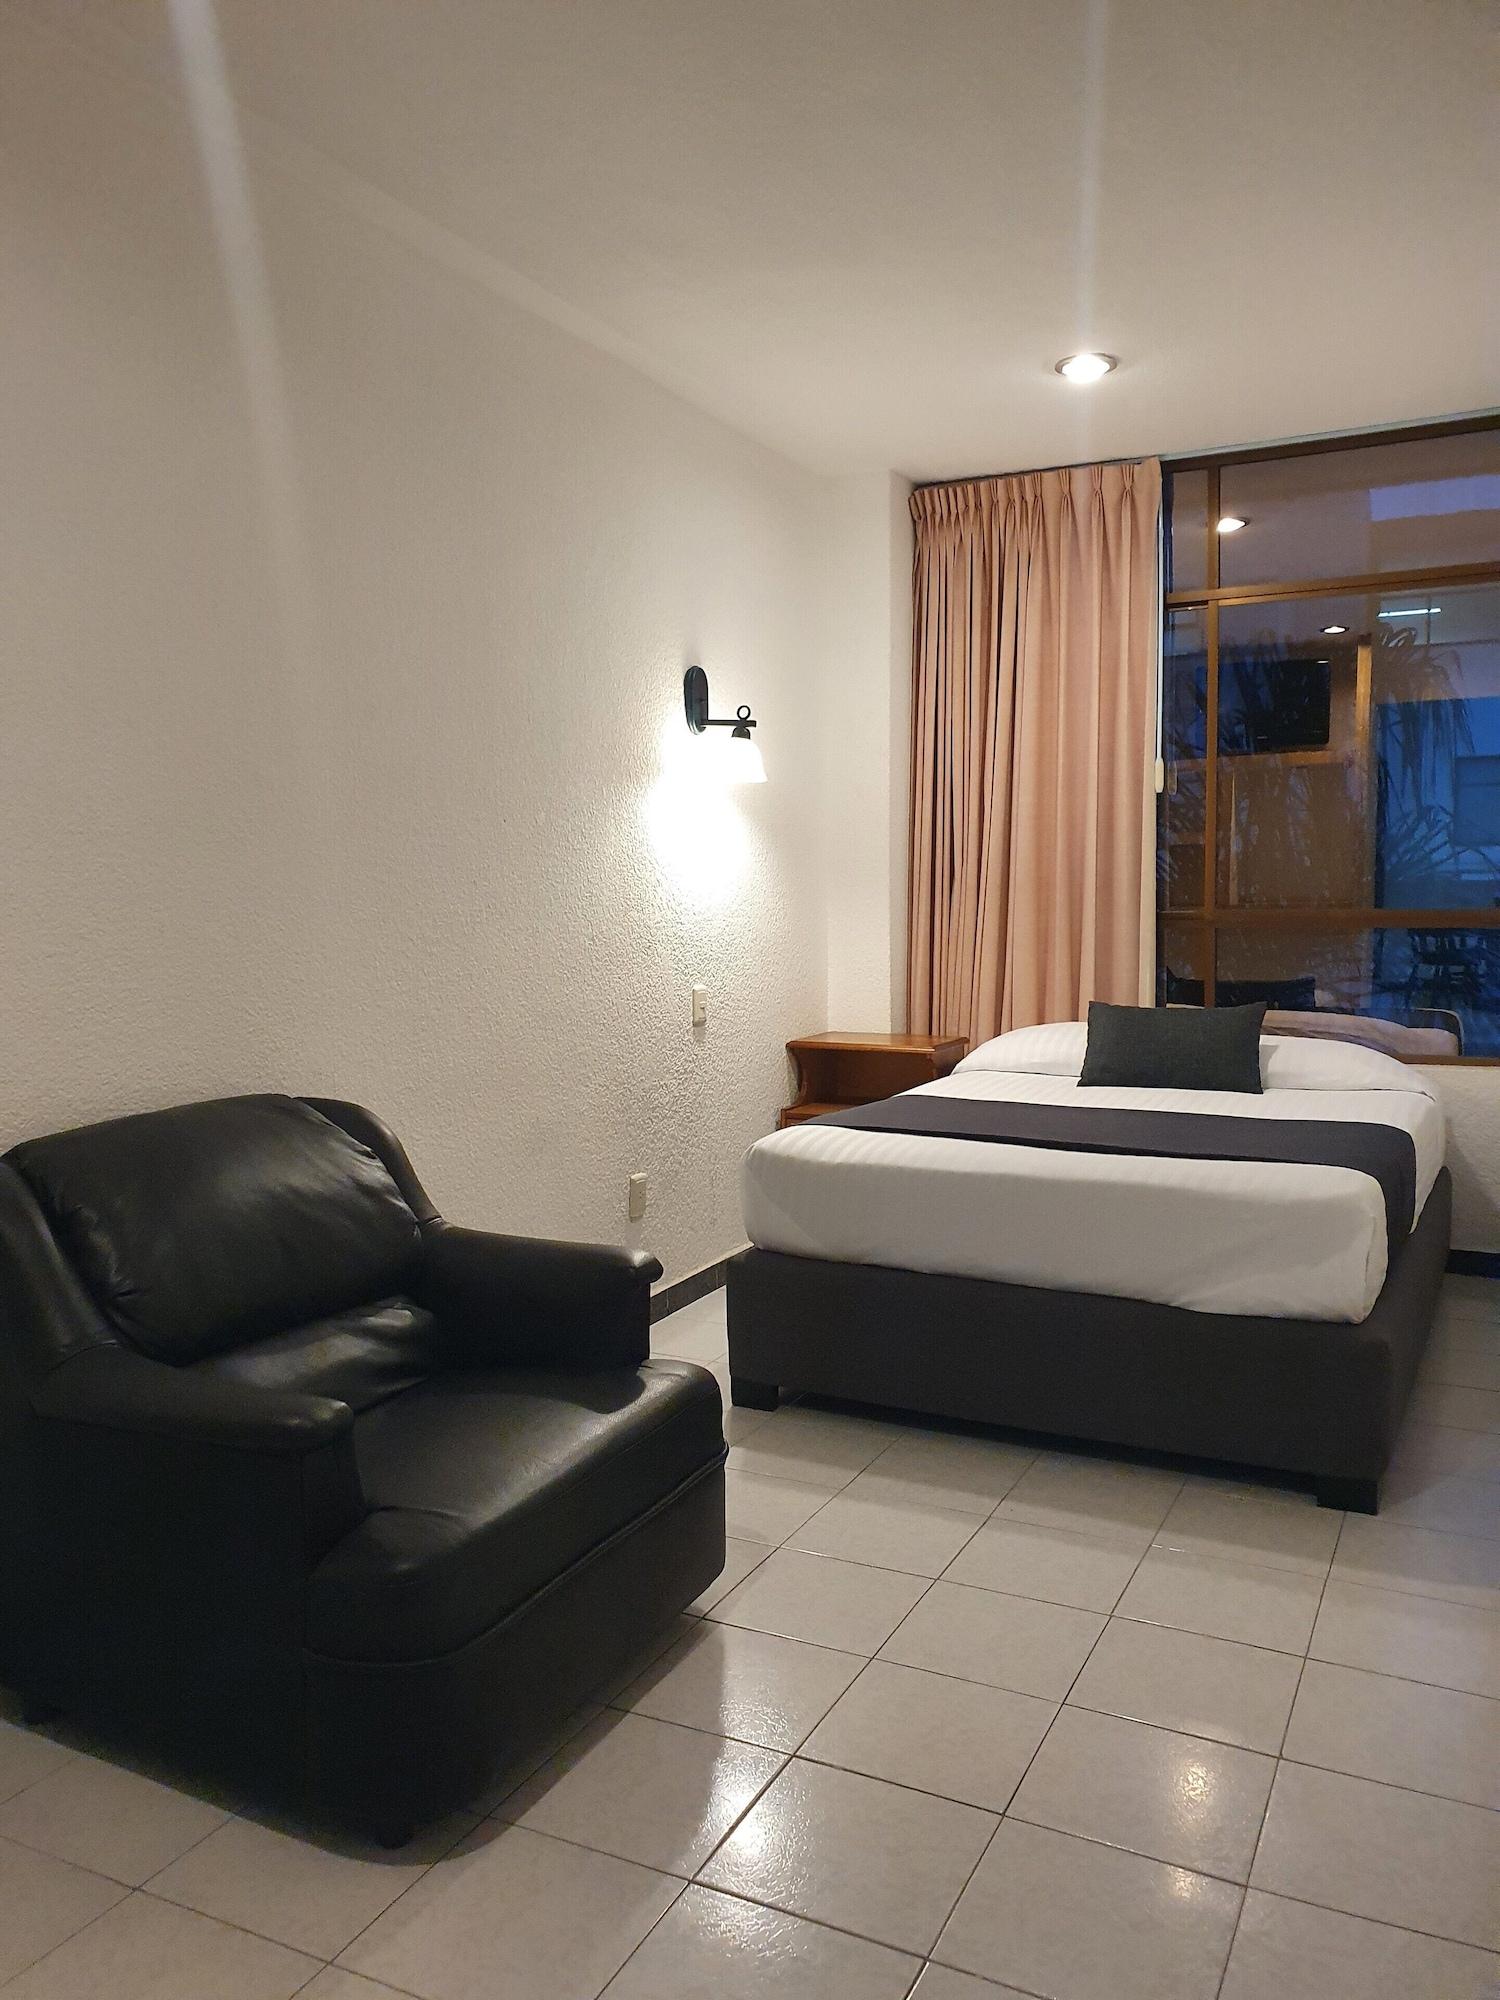 Estanza Hotel&Suites Morelia Exterior foto